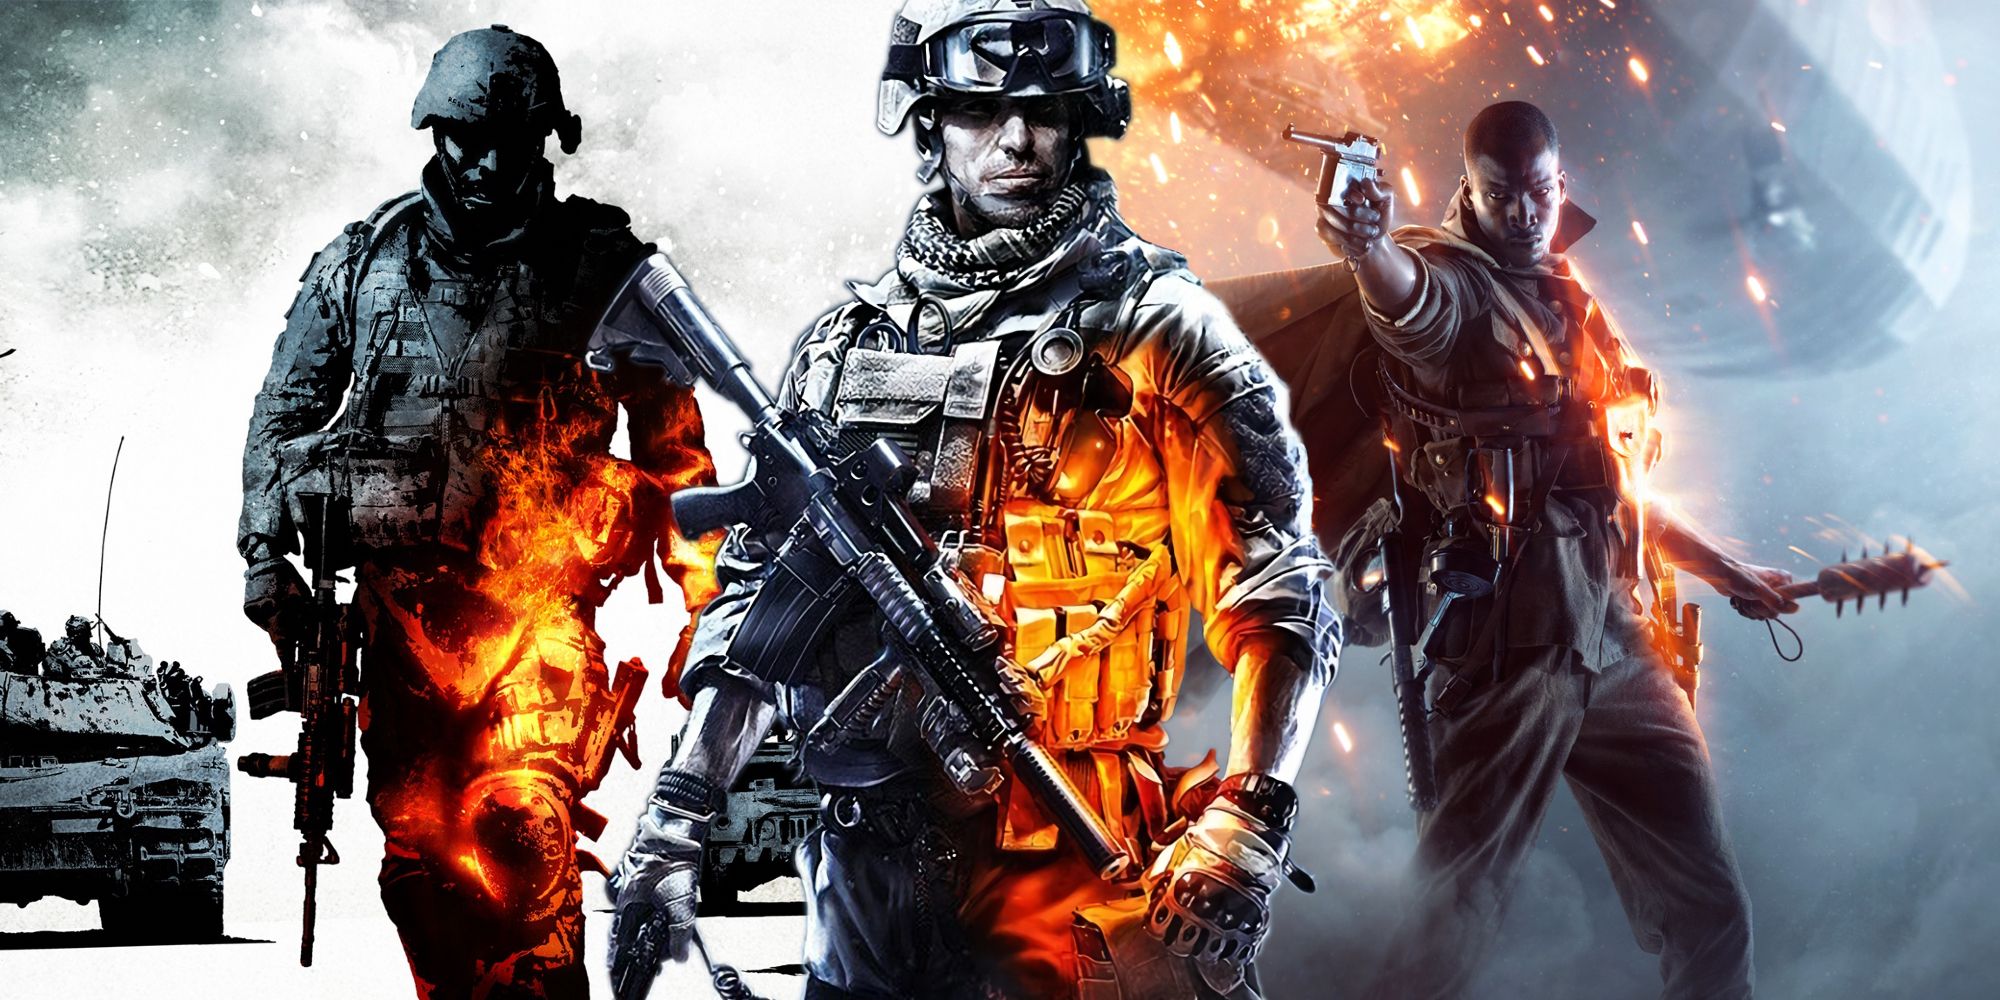 Battlefield 4 Still The Best Battlefield Game, Almost 10 Years